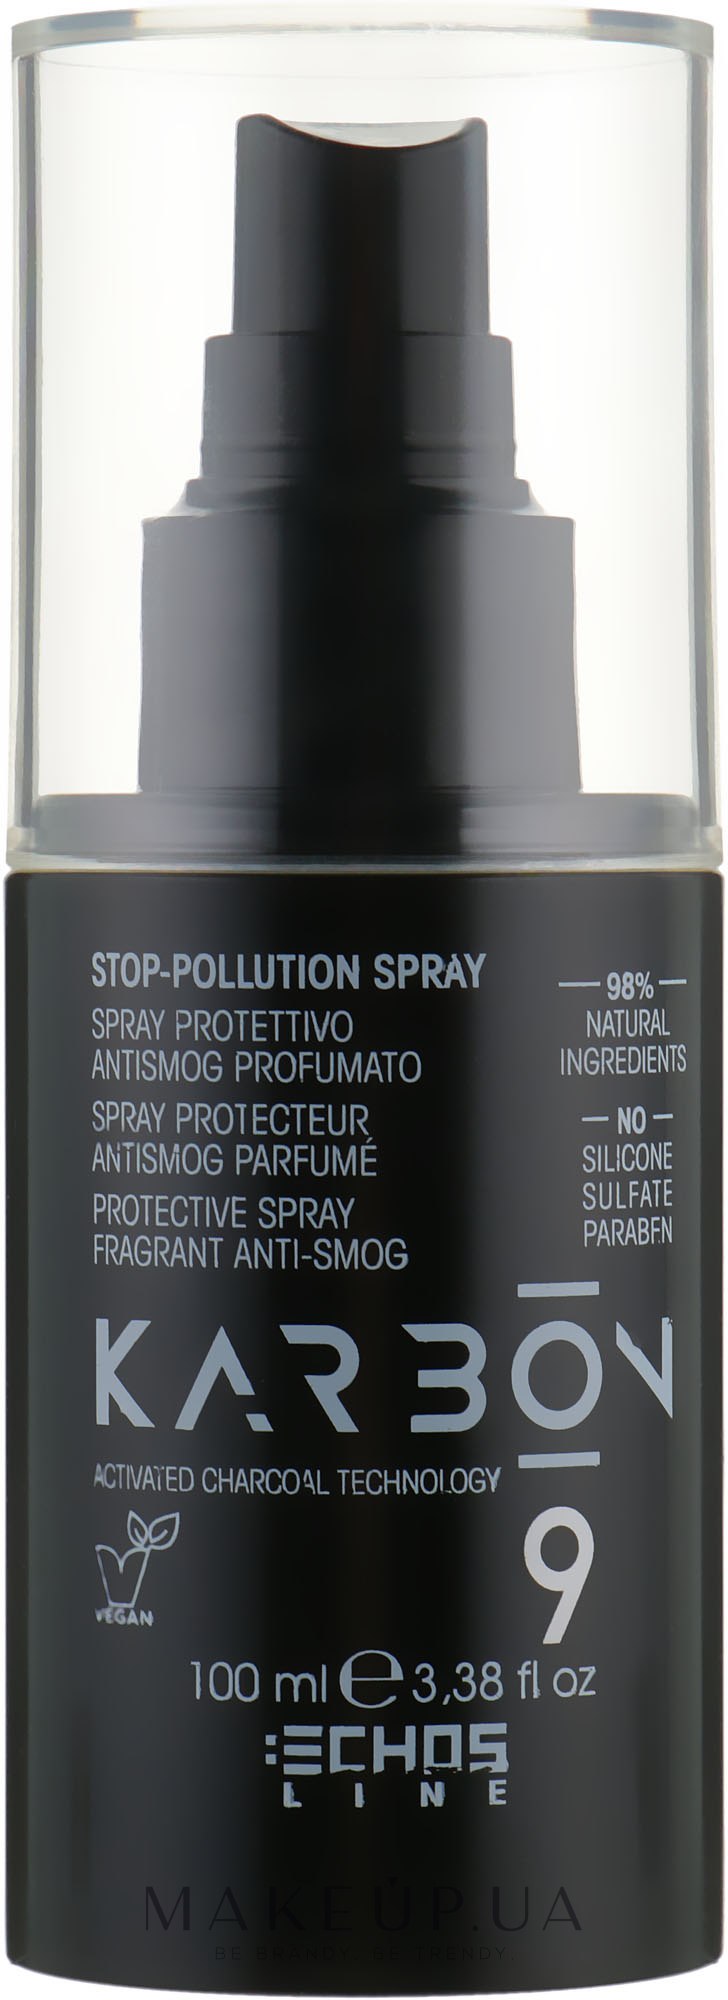 Захисний спрей антисмог - Echosline Karbon 9 Charcoal Stop-Pollution Spray — фото 100ml